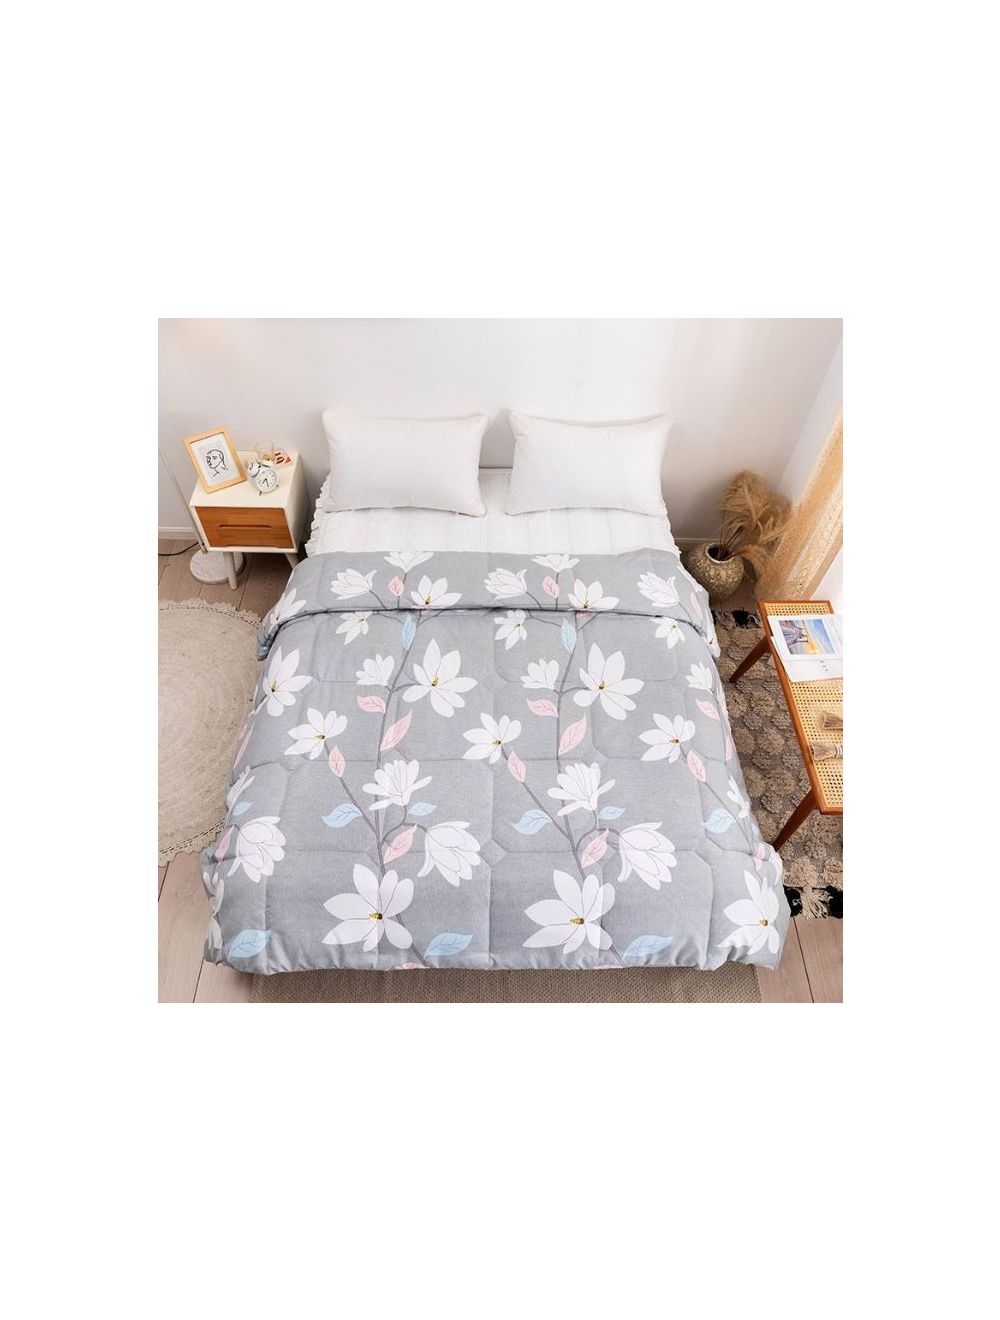 Rishahome Silver S, Single Size Comforter Microfiber Multicolour 150x200cm-SSAC0001